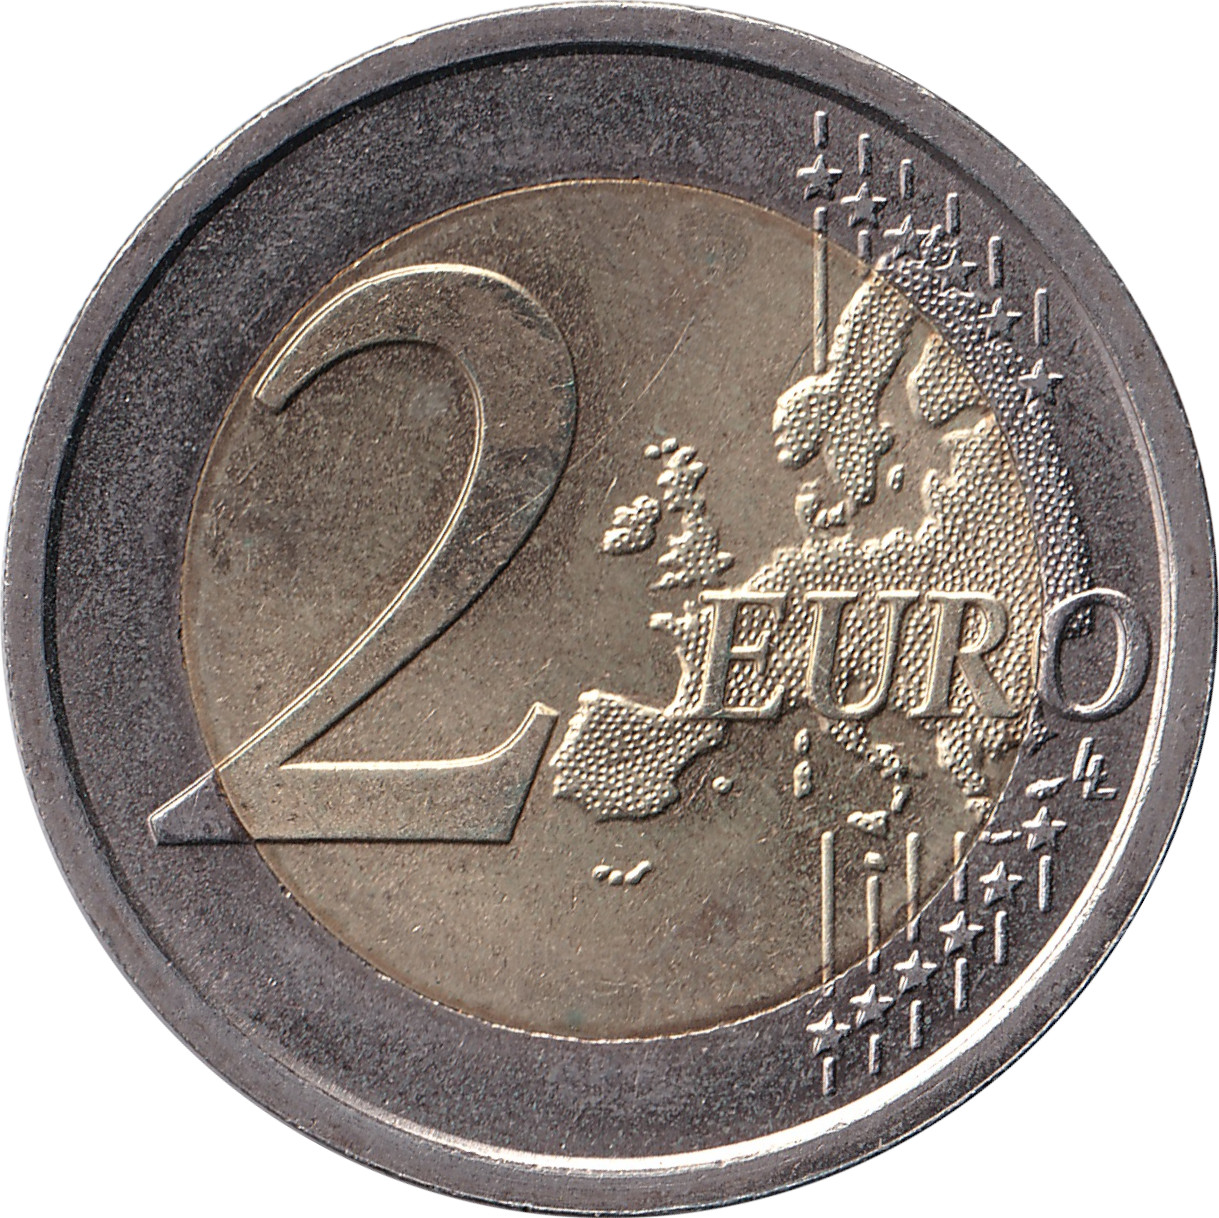 2 euro - Déclaration Universelle des Droits de l'Homme